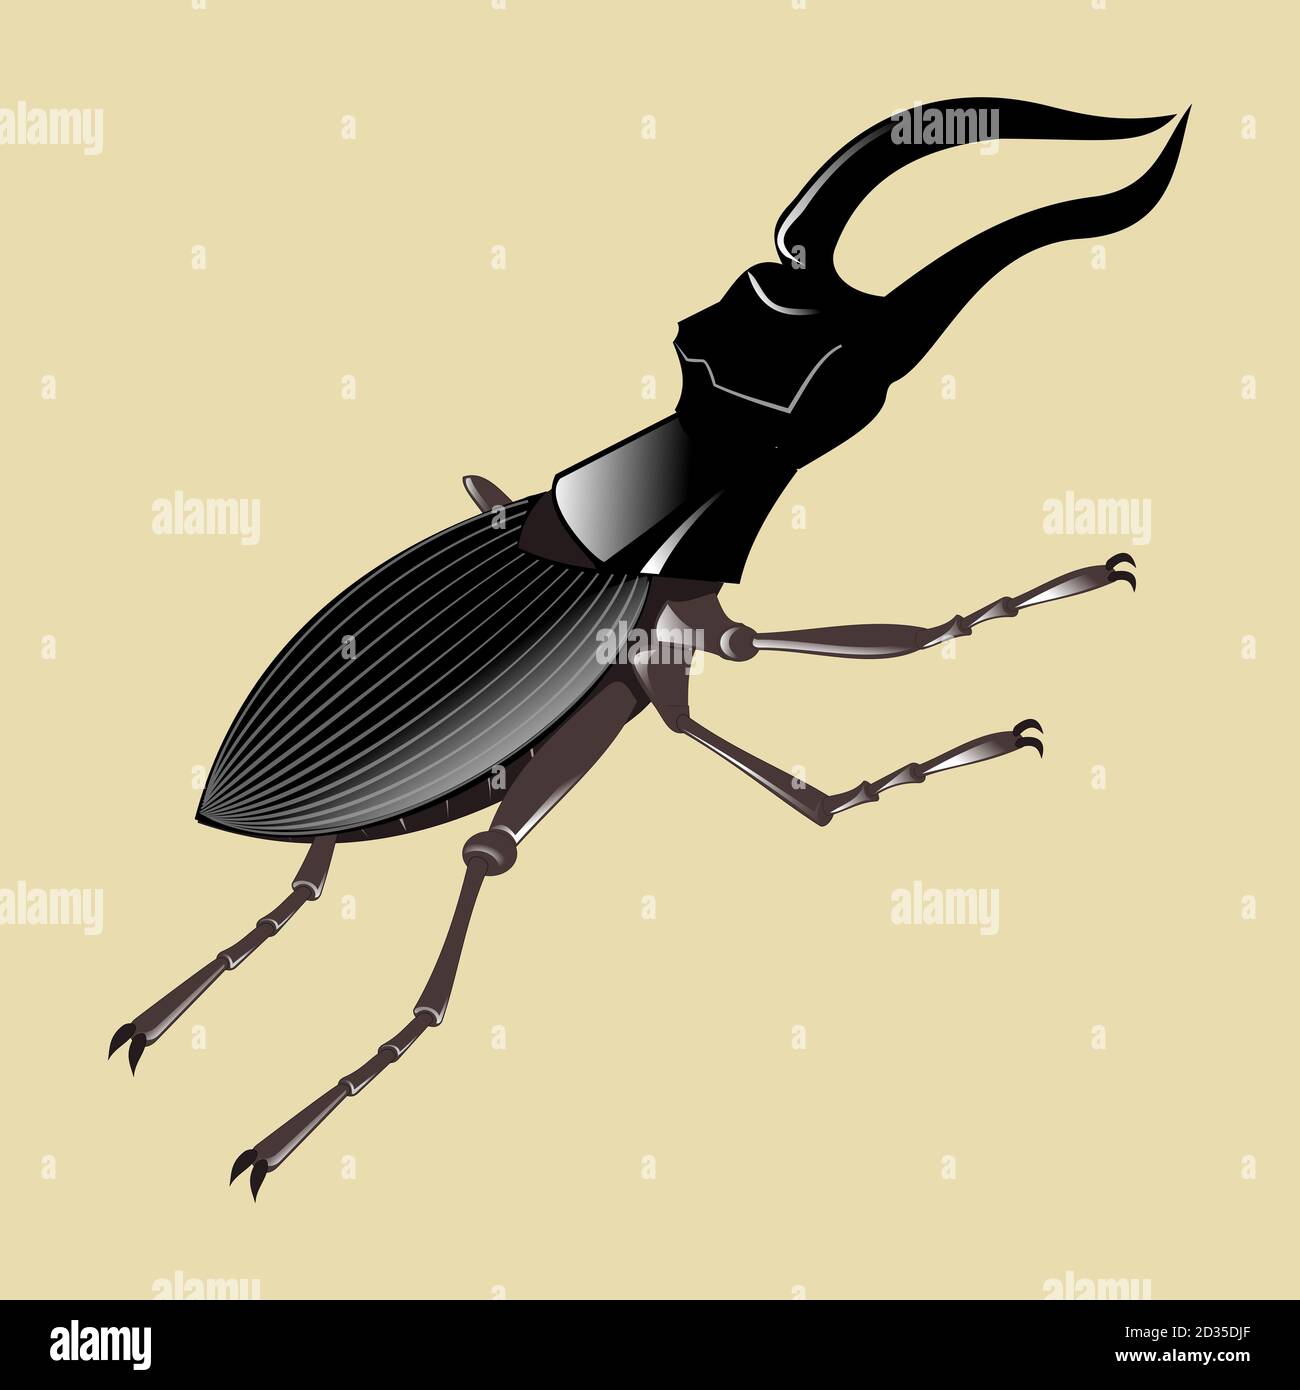 El escarabajo ciervo volante es el más grande de Europa Stock Photo